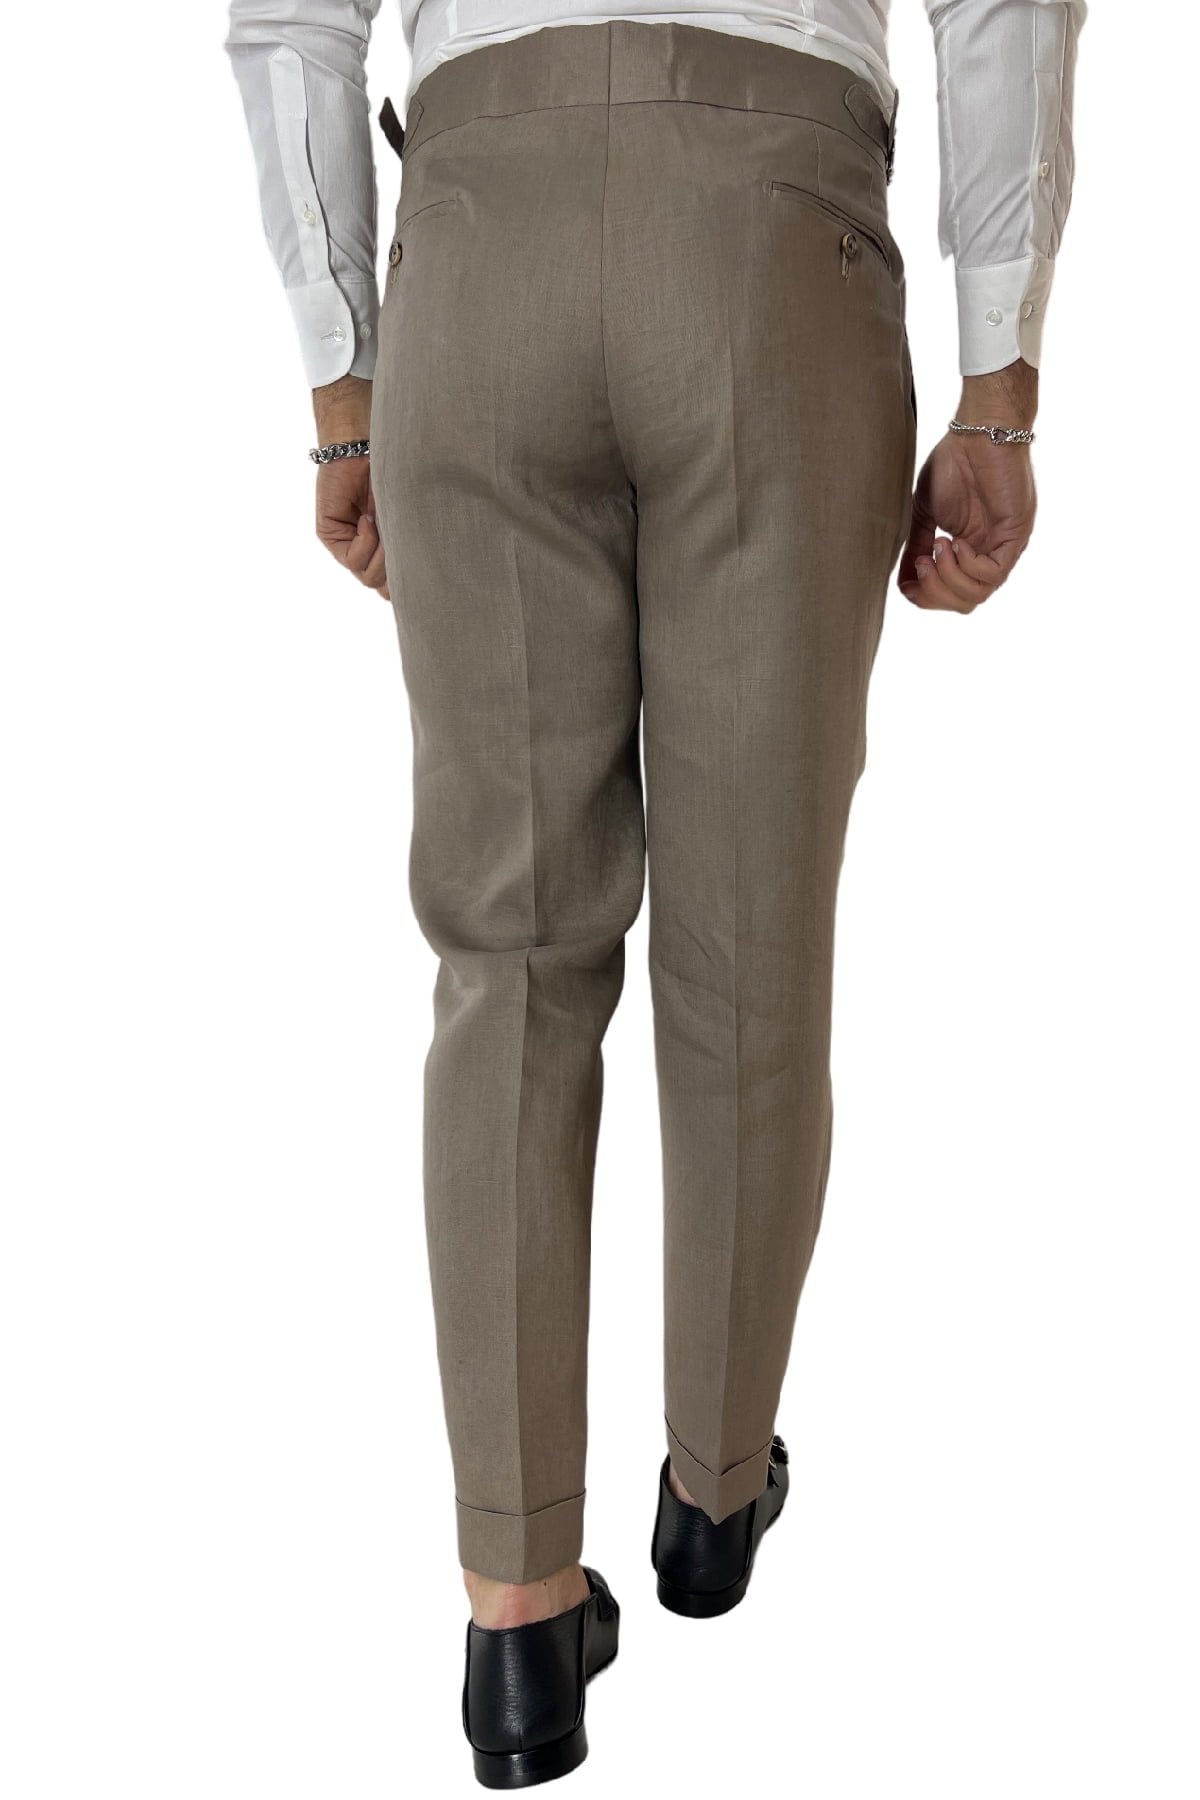 Pantalone uomo fango in lino 100% vita alta con pinces fibbie laterali e risvolto 4cm